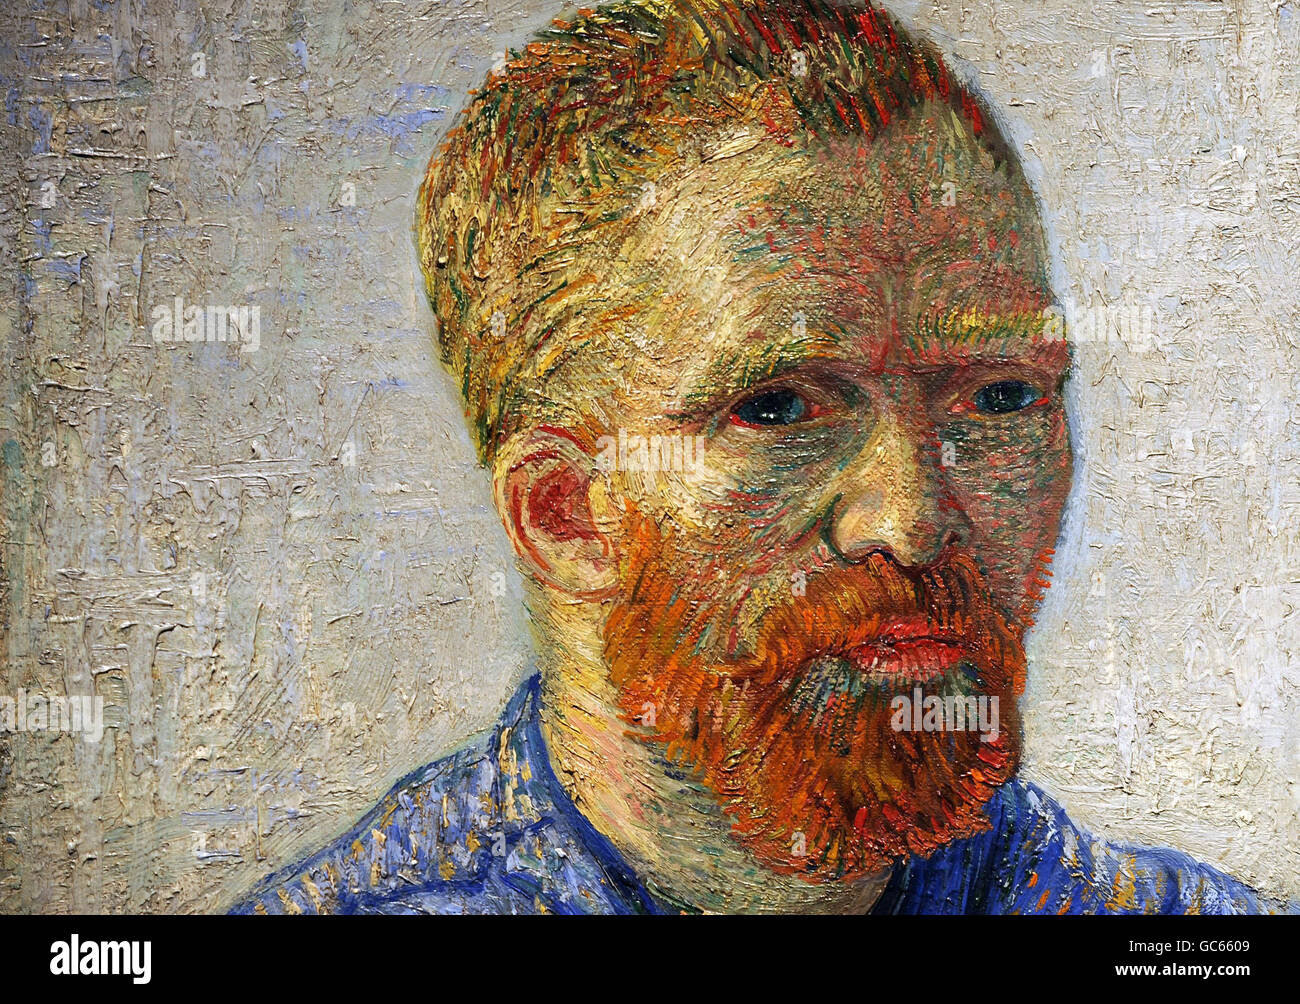 Un détail tiré du autoportrait en tant qu'artiste, par l'artiste néerlandais Vincent Van Gogh (1853-1890), une œuvre centrale à la prévisualisation du vrai Van Gogh : l'artiste et ses lettres à l'Académie royale de Piccadilly, Londres. Banque D'Images